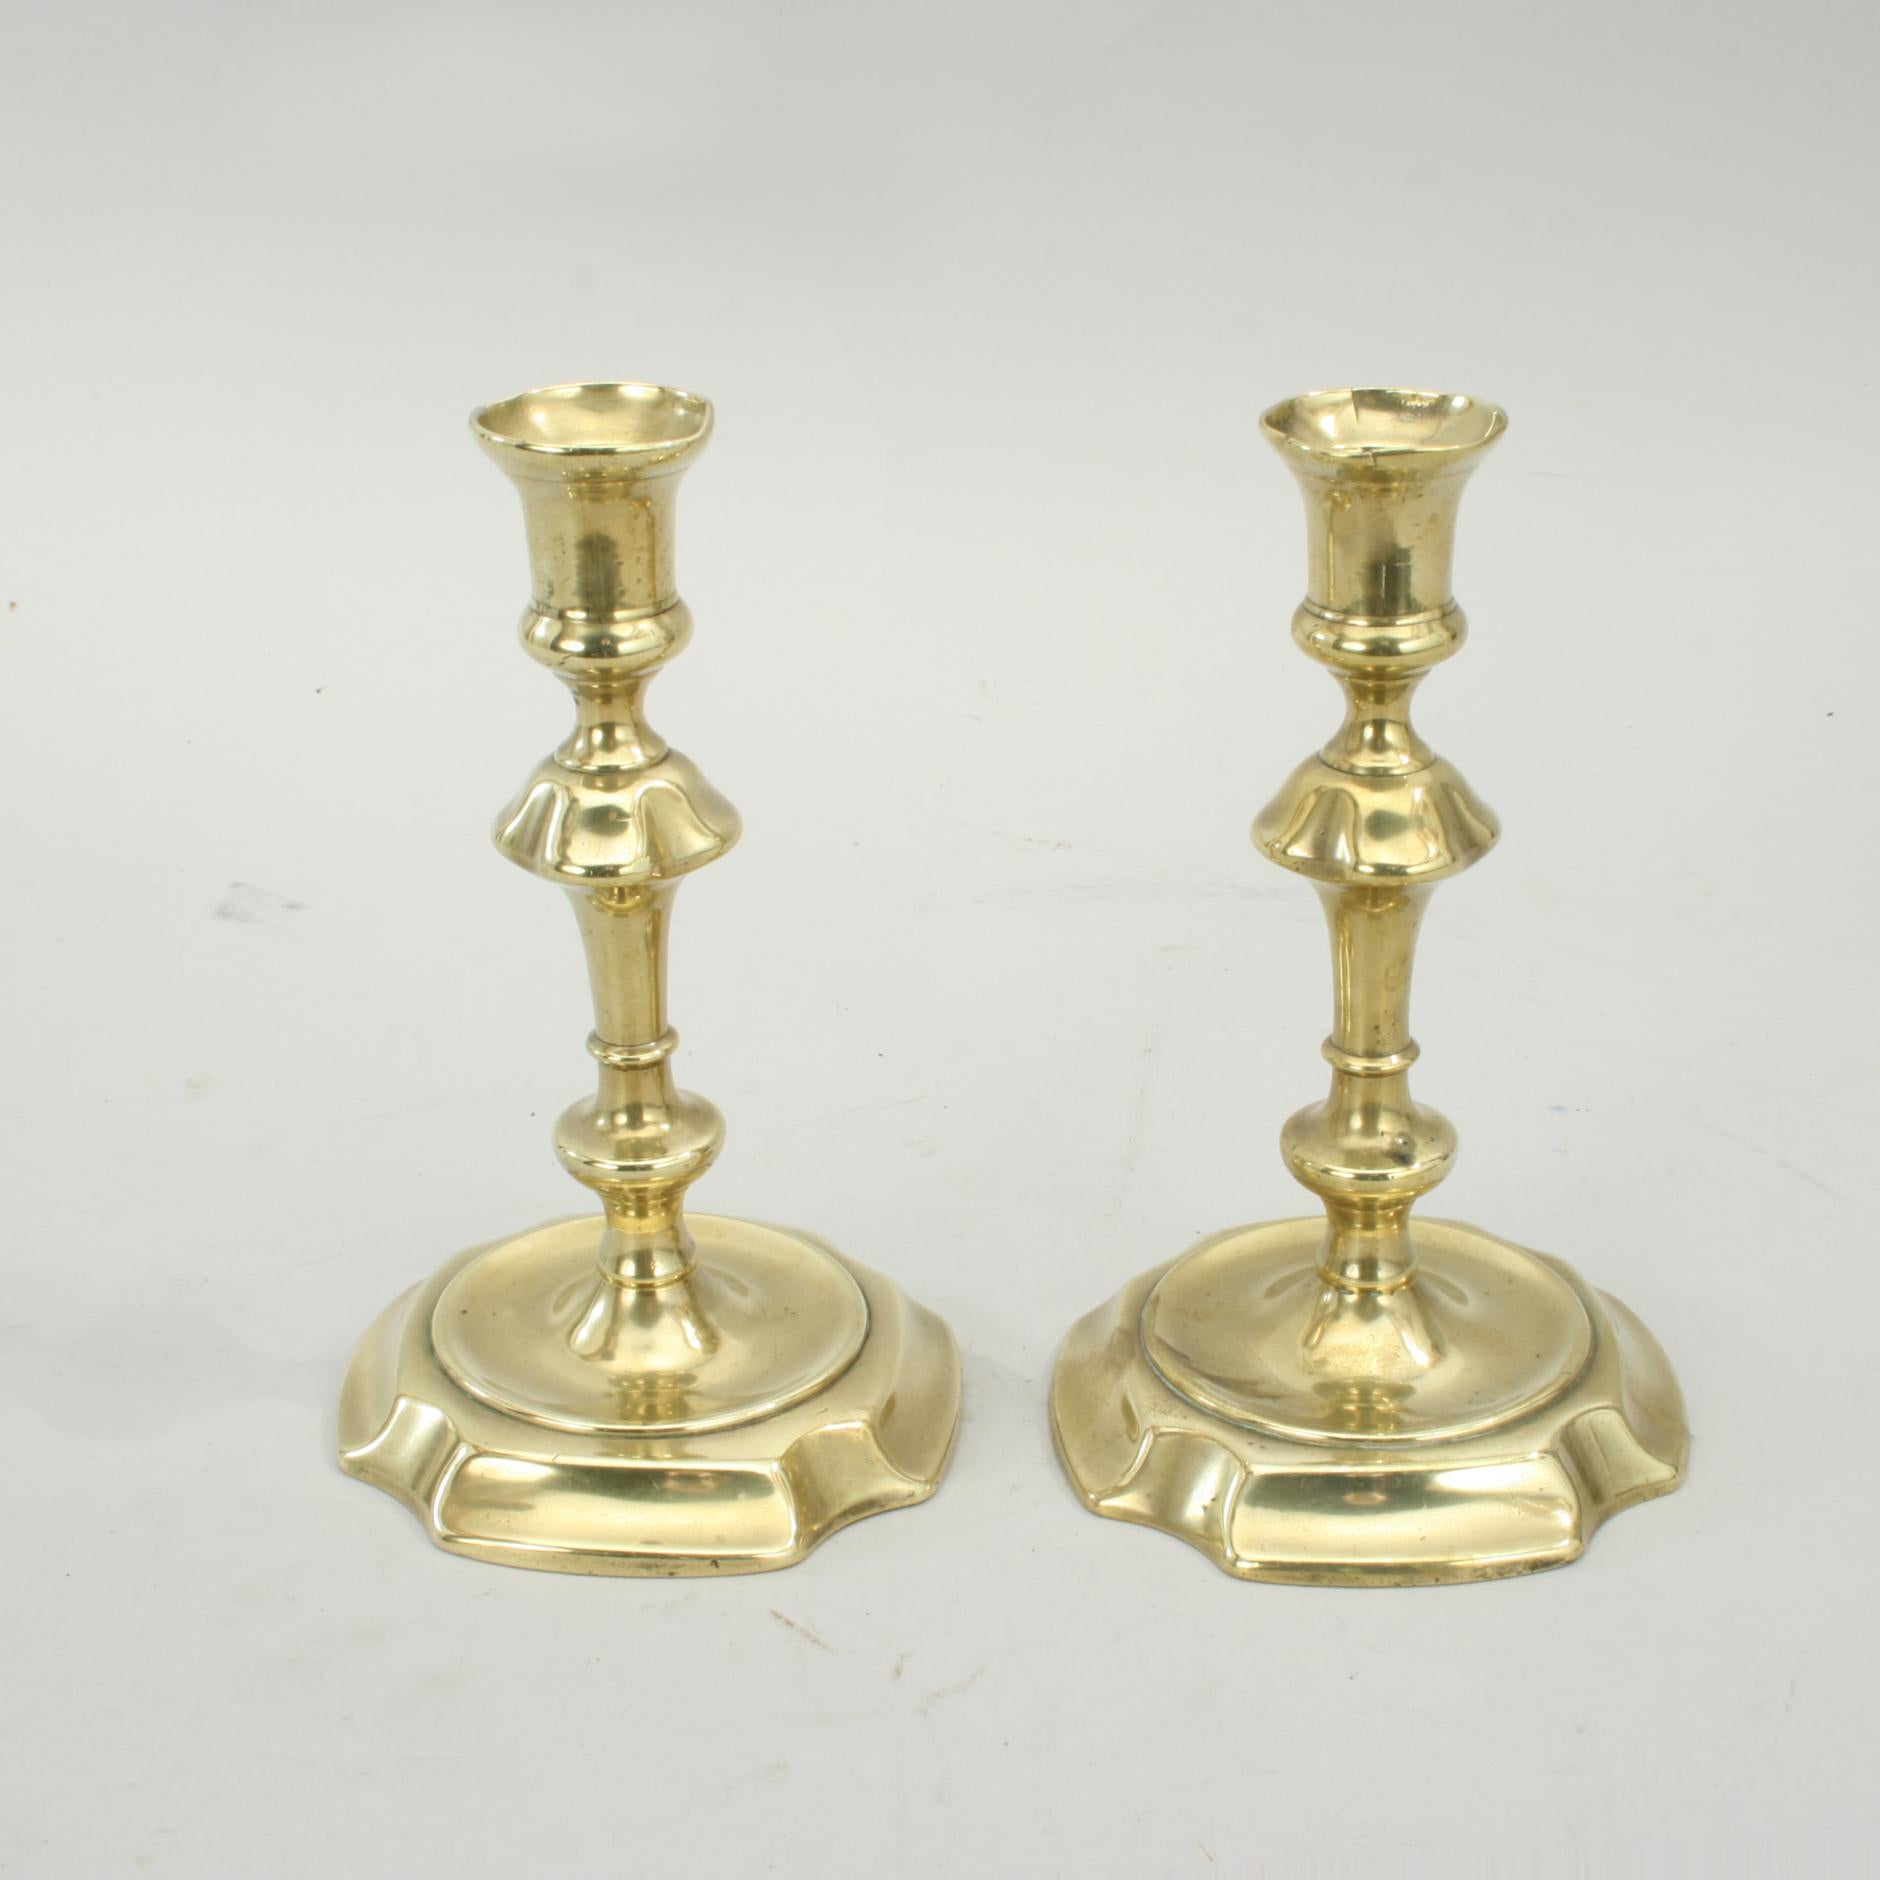 British Antique Brass Candlesticks For Sale